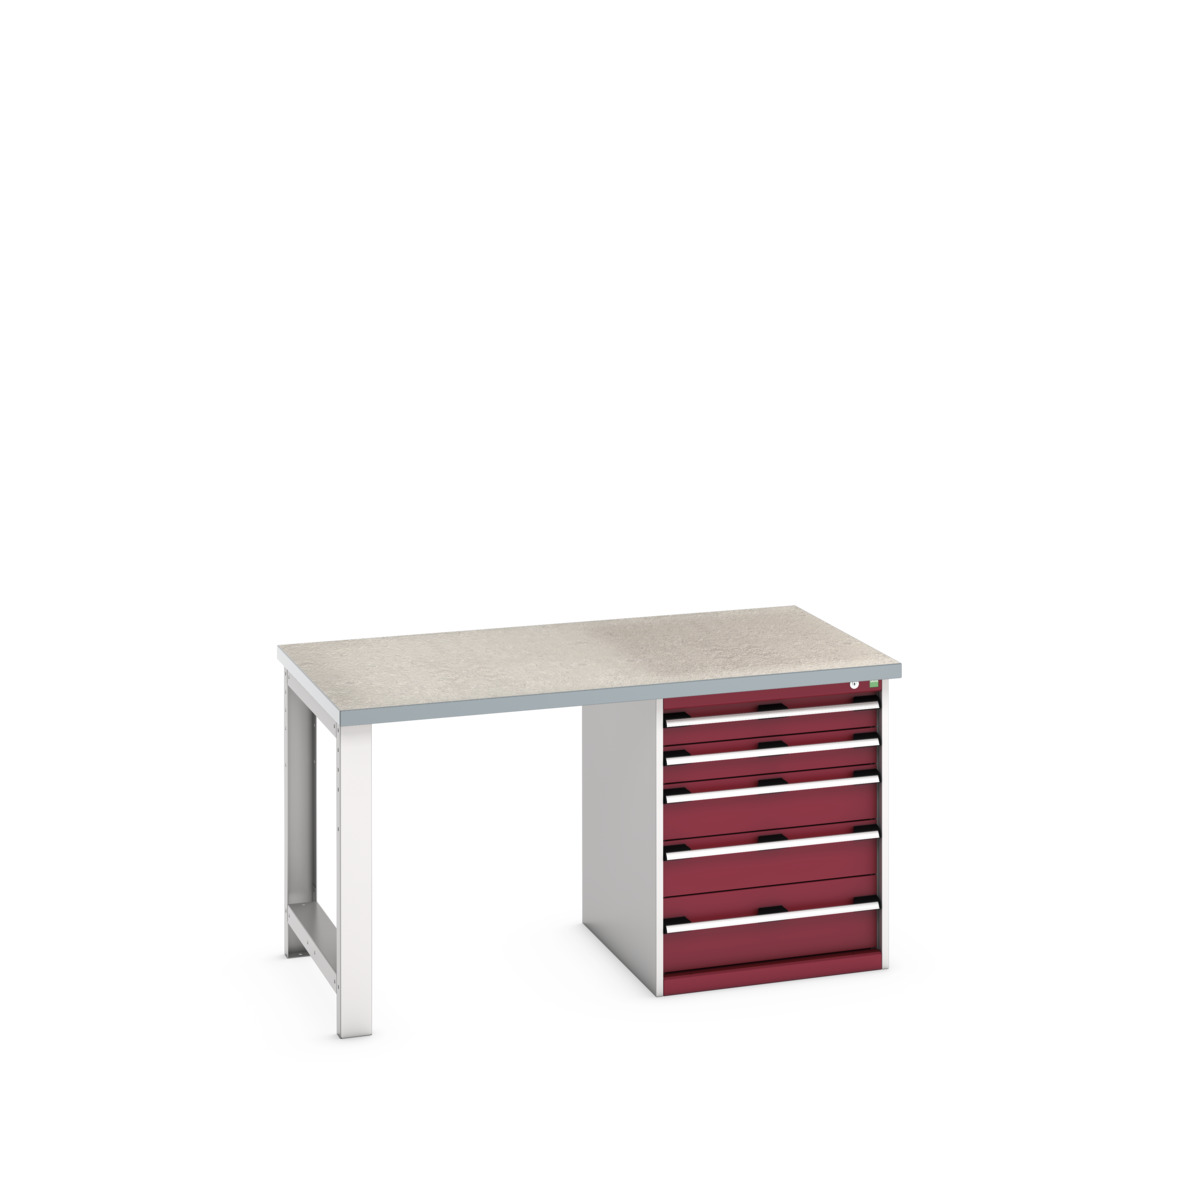 41004110.24V - cubio pedestal bench (lino)